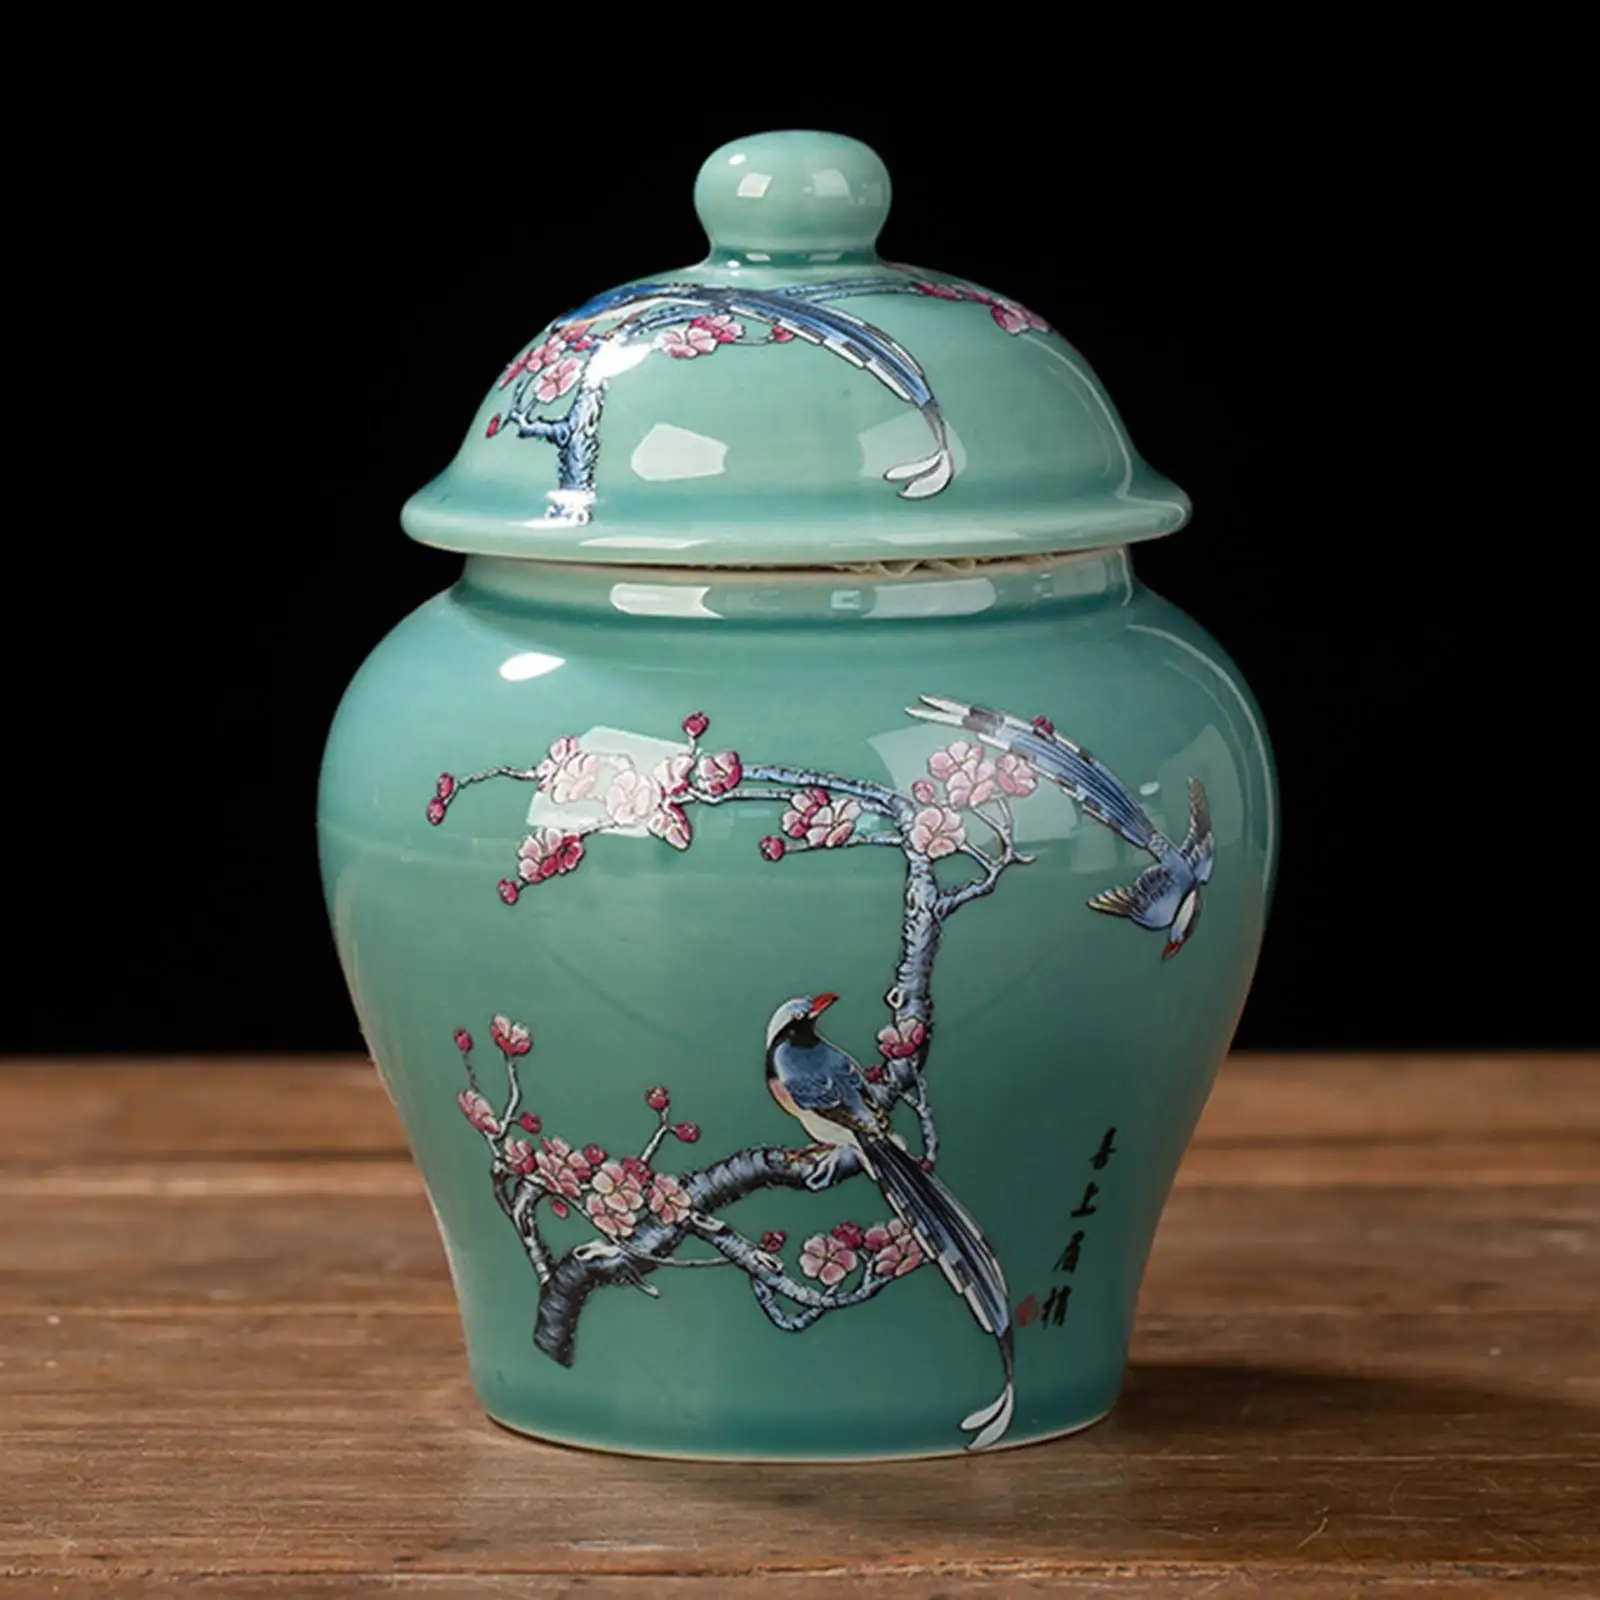 Ceramic Ginger Jar Vintage Style Decorative Gift Crafts Porcelain Jars Vase for Office Table Decoration Wedding Weddings Desktop